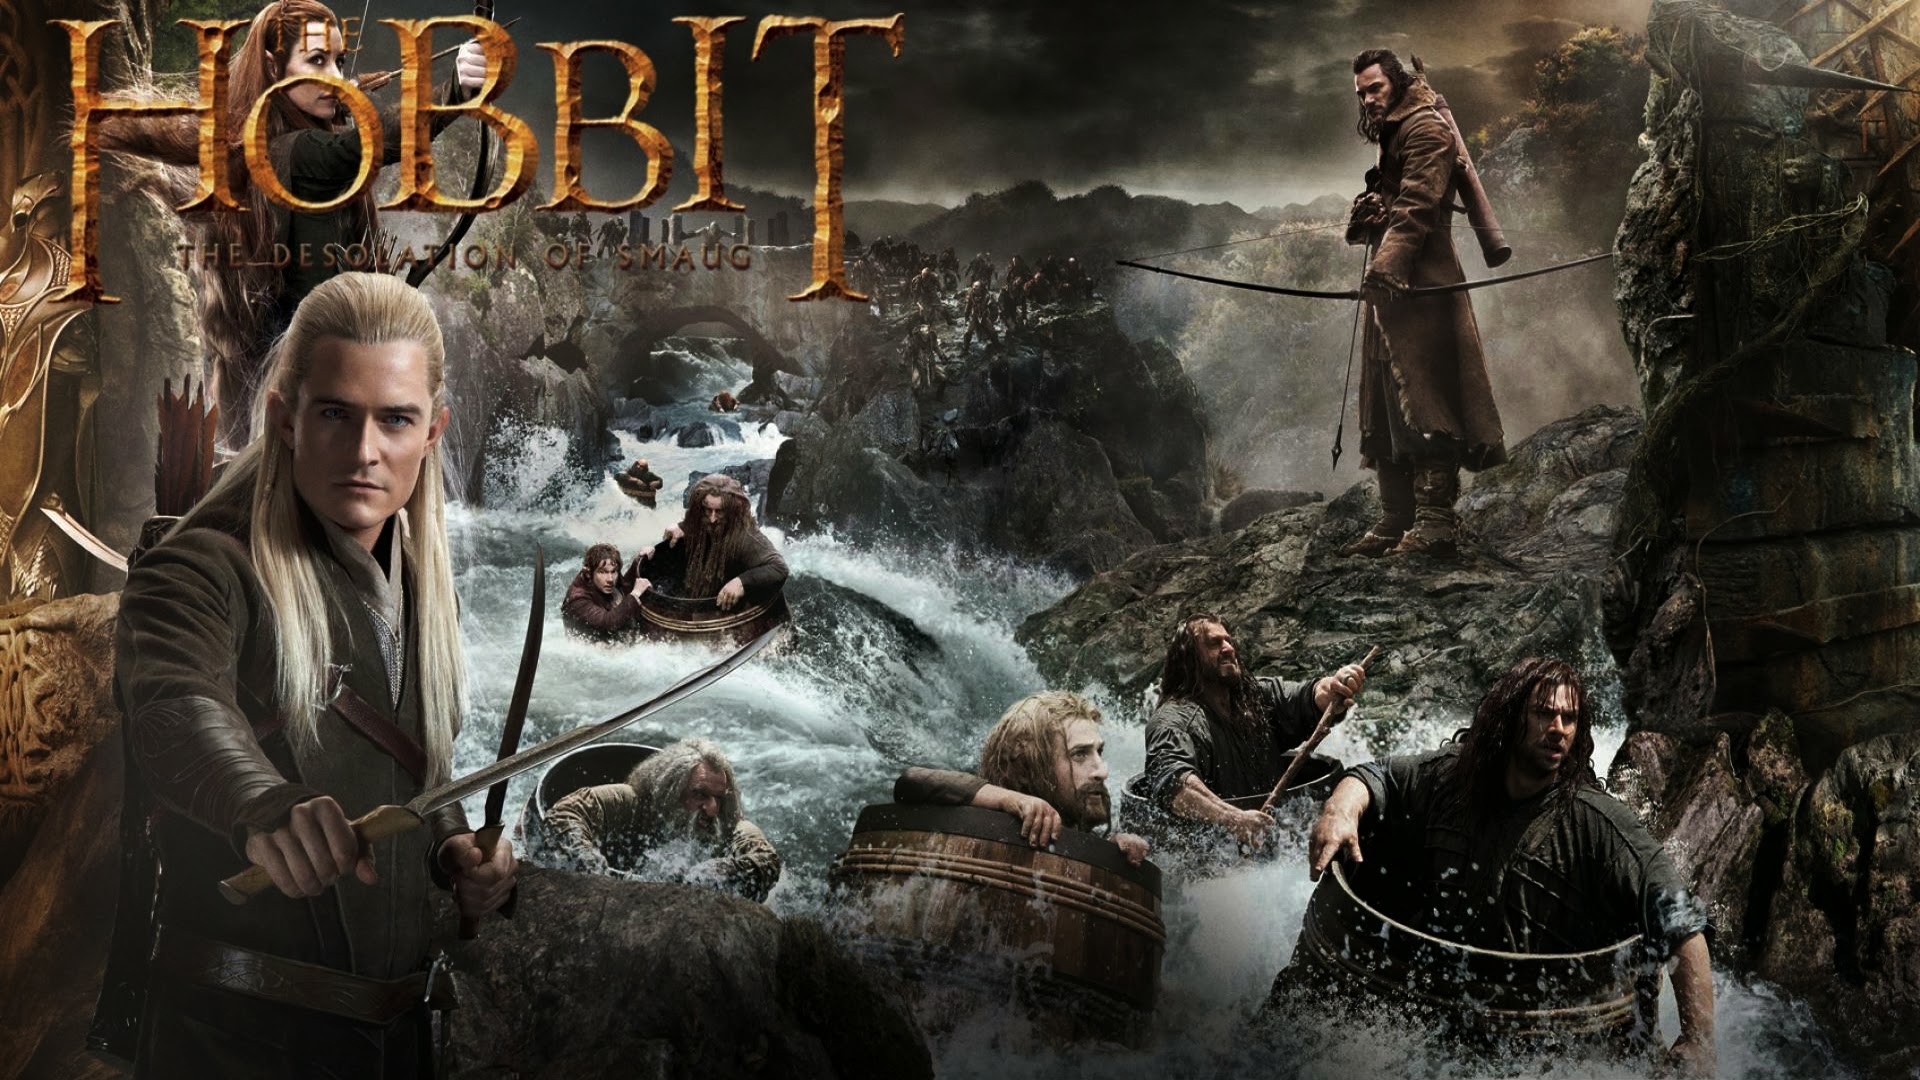 1920x1080 The Hobbit 2013 Wallpaper